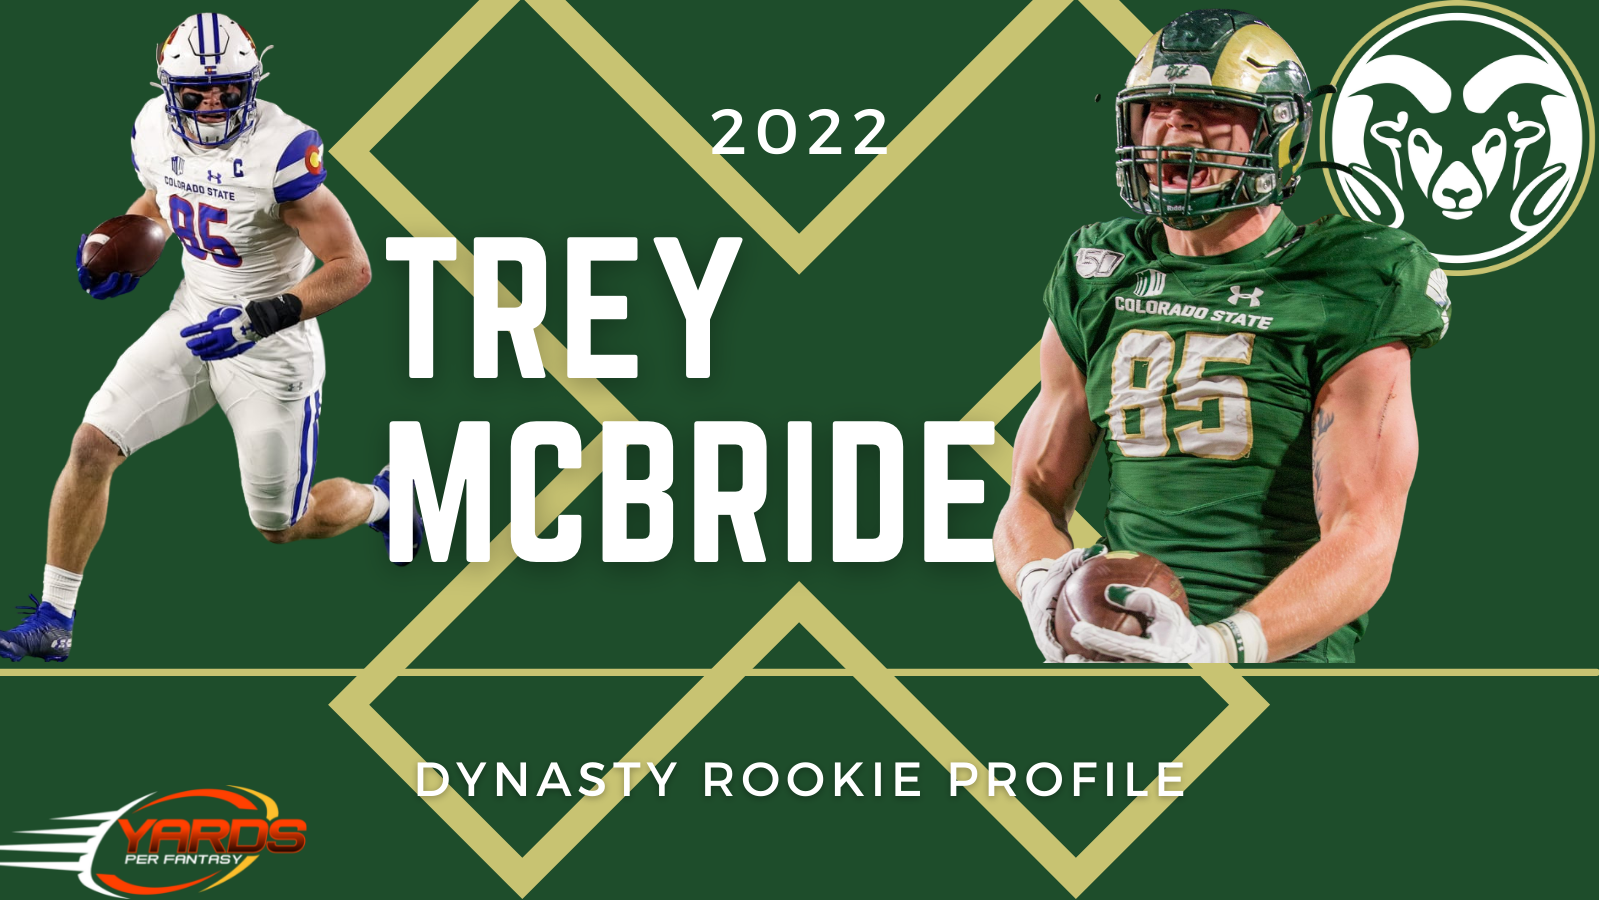 Trey McBride: 2022 Dynasty Rookie Profile - Yards Per Fantasy